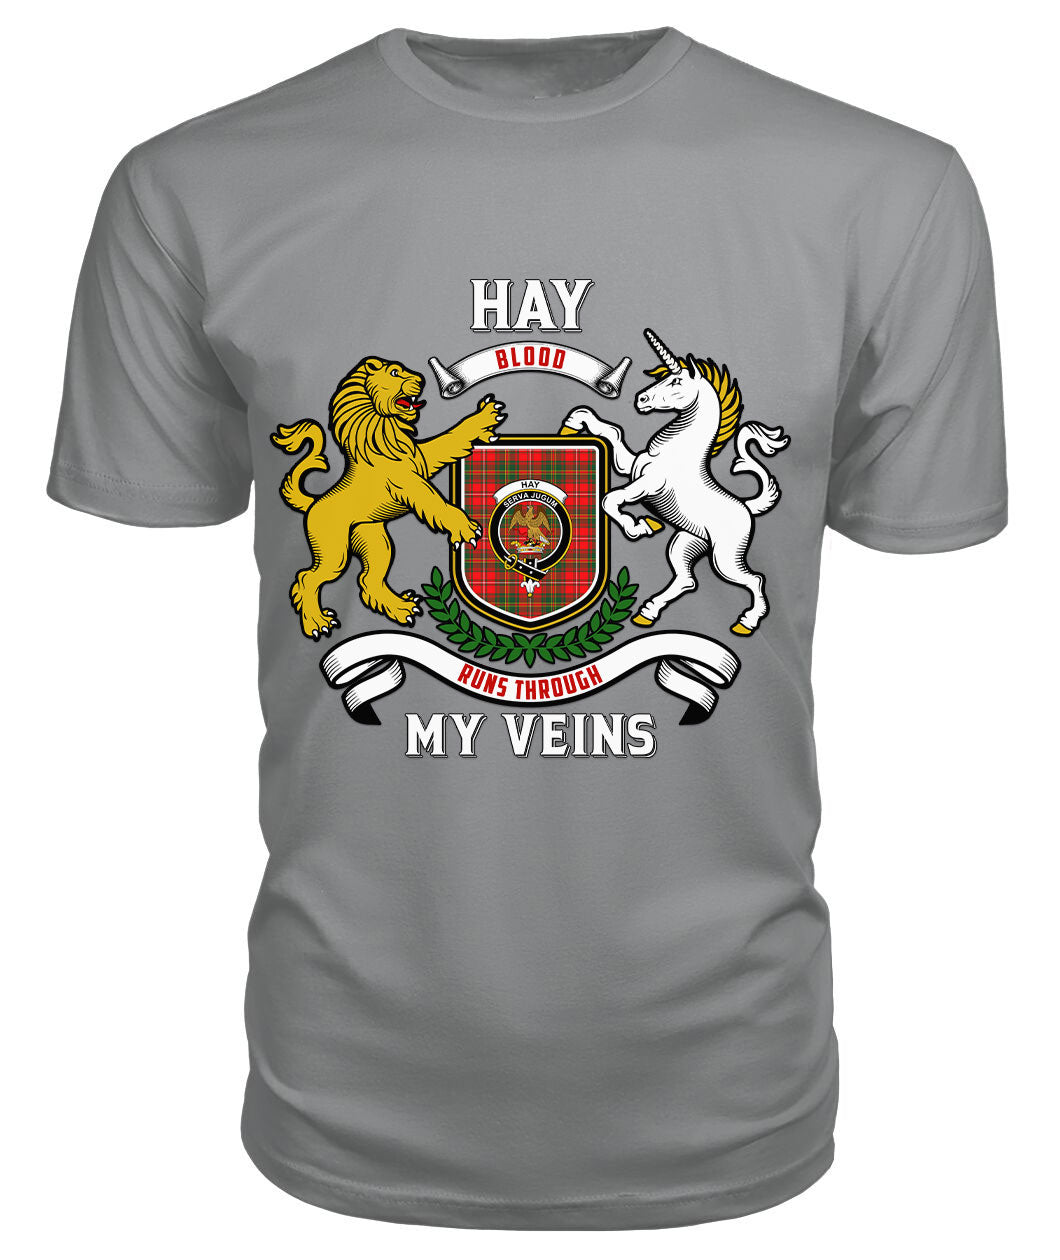 Hay Modern Tartan Crest 2D T-shirt - Blood Runs Through My Veins Style